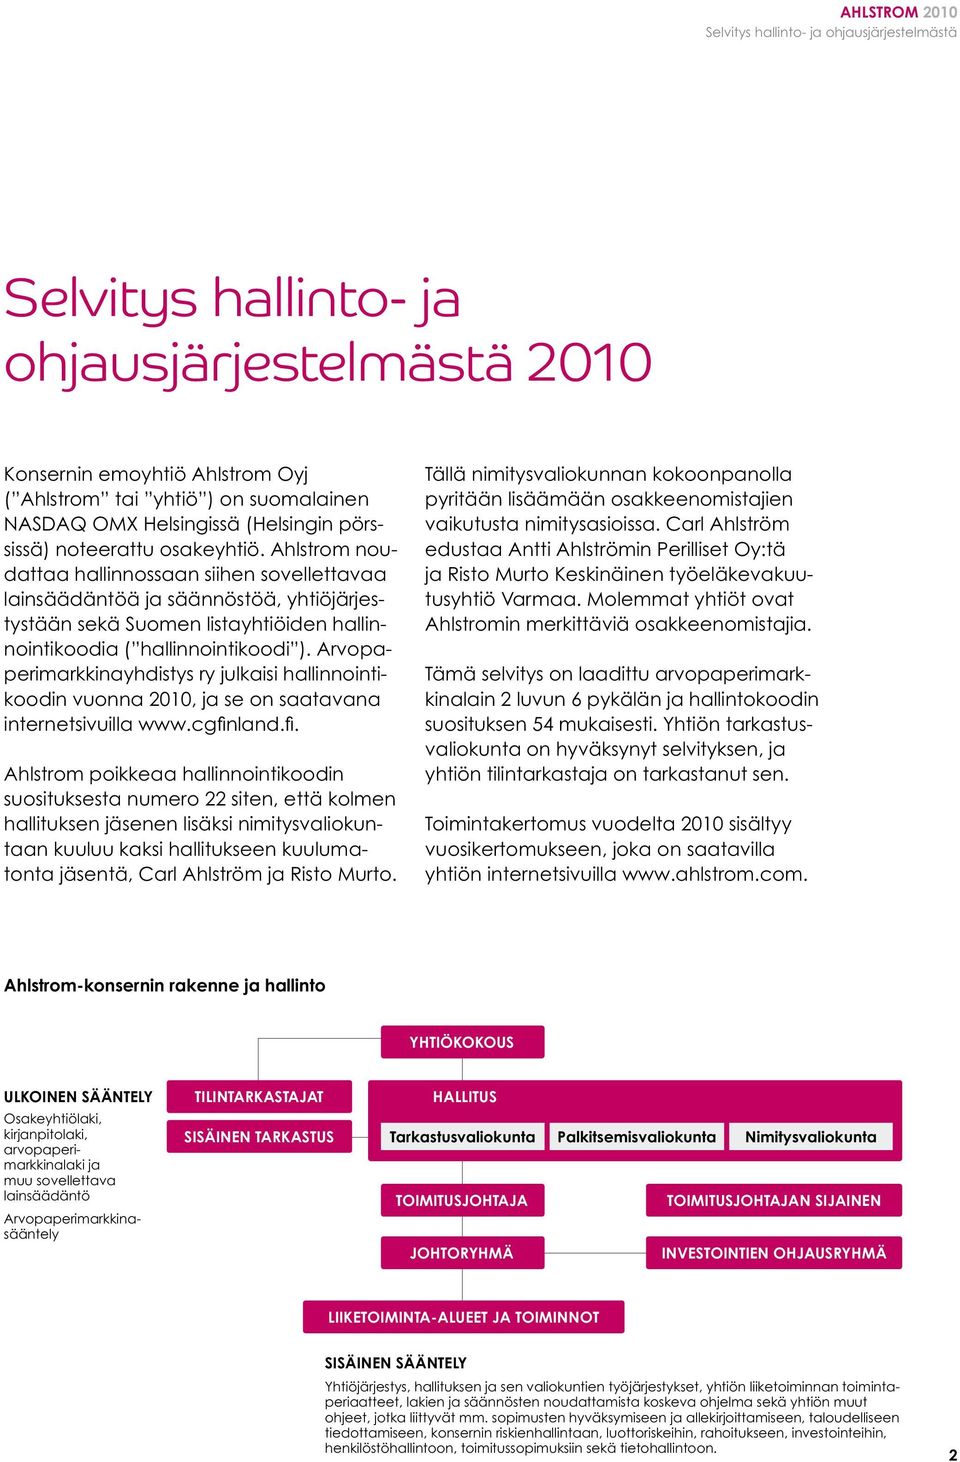 Arvopaperimarkkinayhdistys ry julkaisi hallinnointikoodin vuonna 2010, ja se on saatavana internetsivuilla www.cgfin